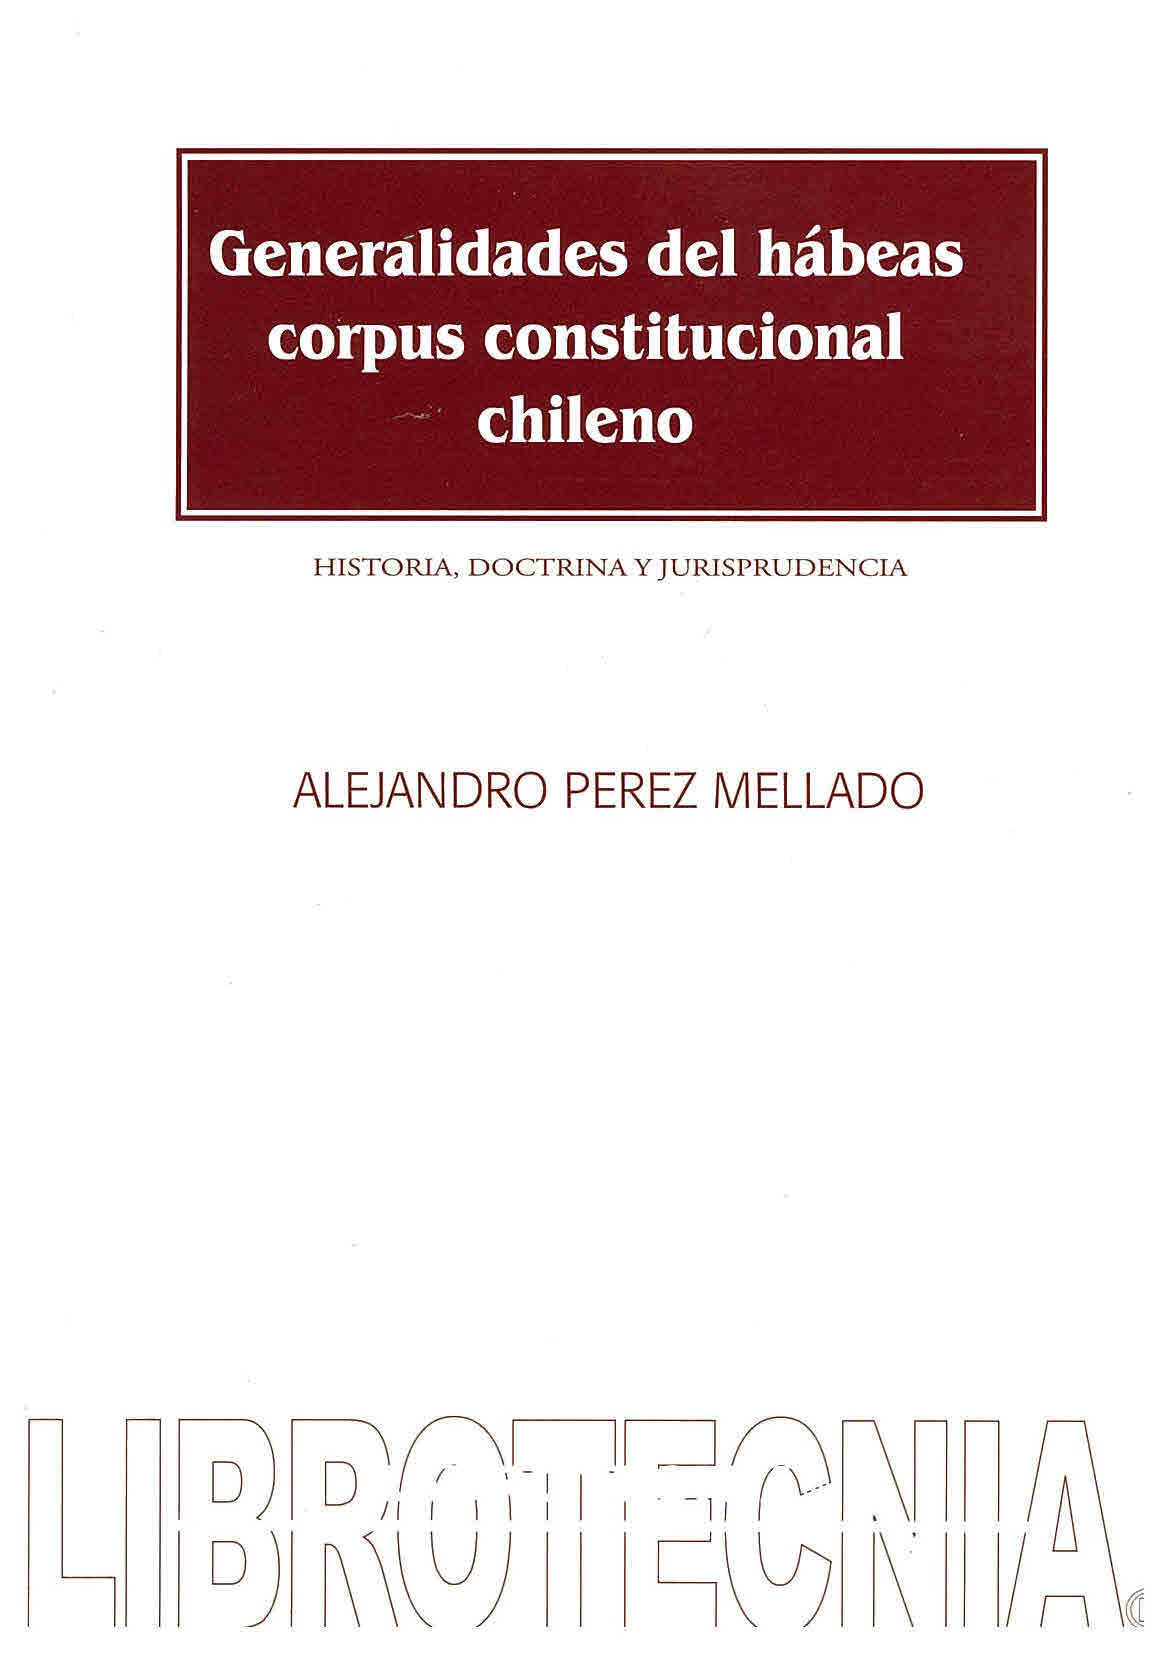 Generalidades del habeas corpus constitucional chileno: historia, doctrina y jurisprudencia